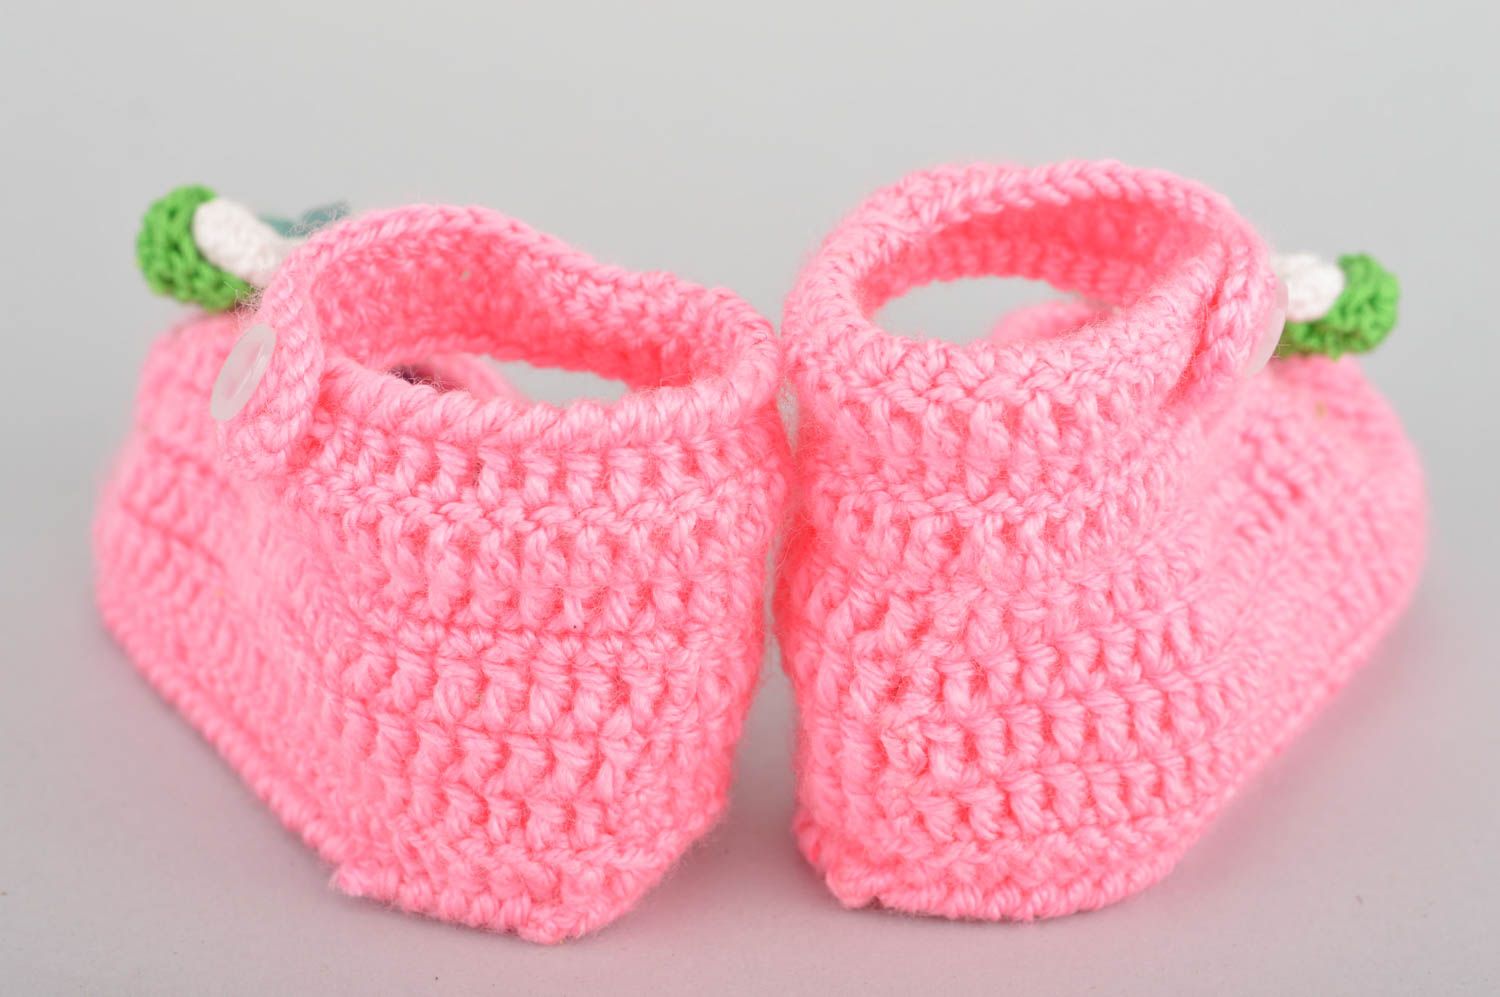 Пинетки для младенцев вязаные крючком из хлопка хэнд мэйд розовые для девочки фото 5